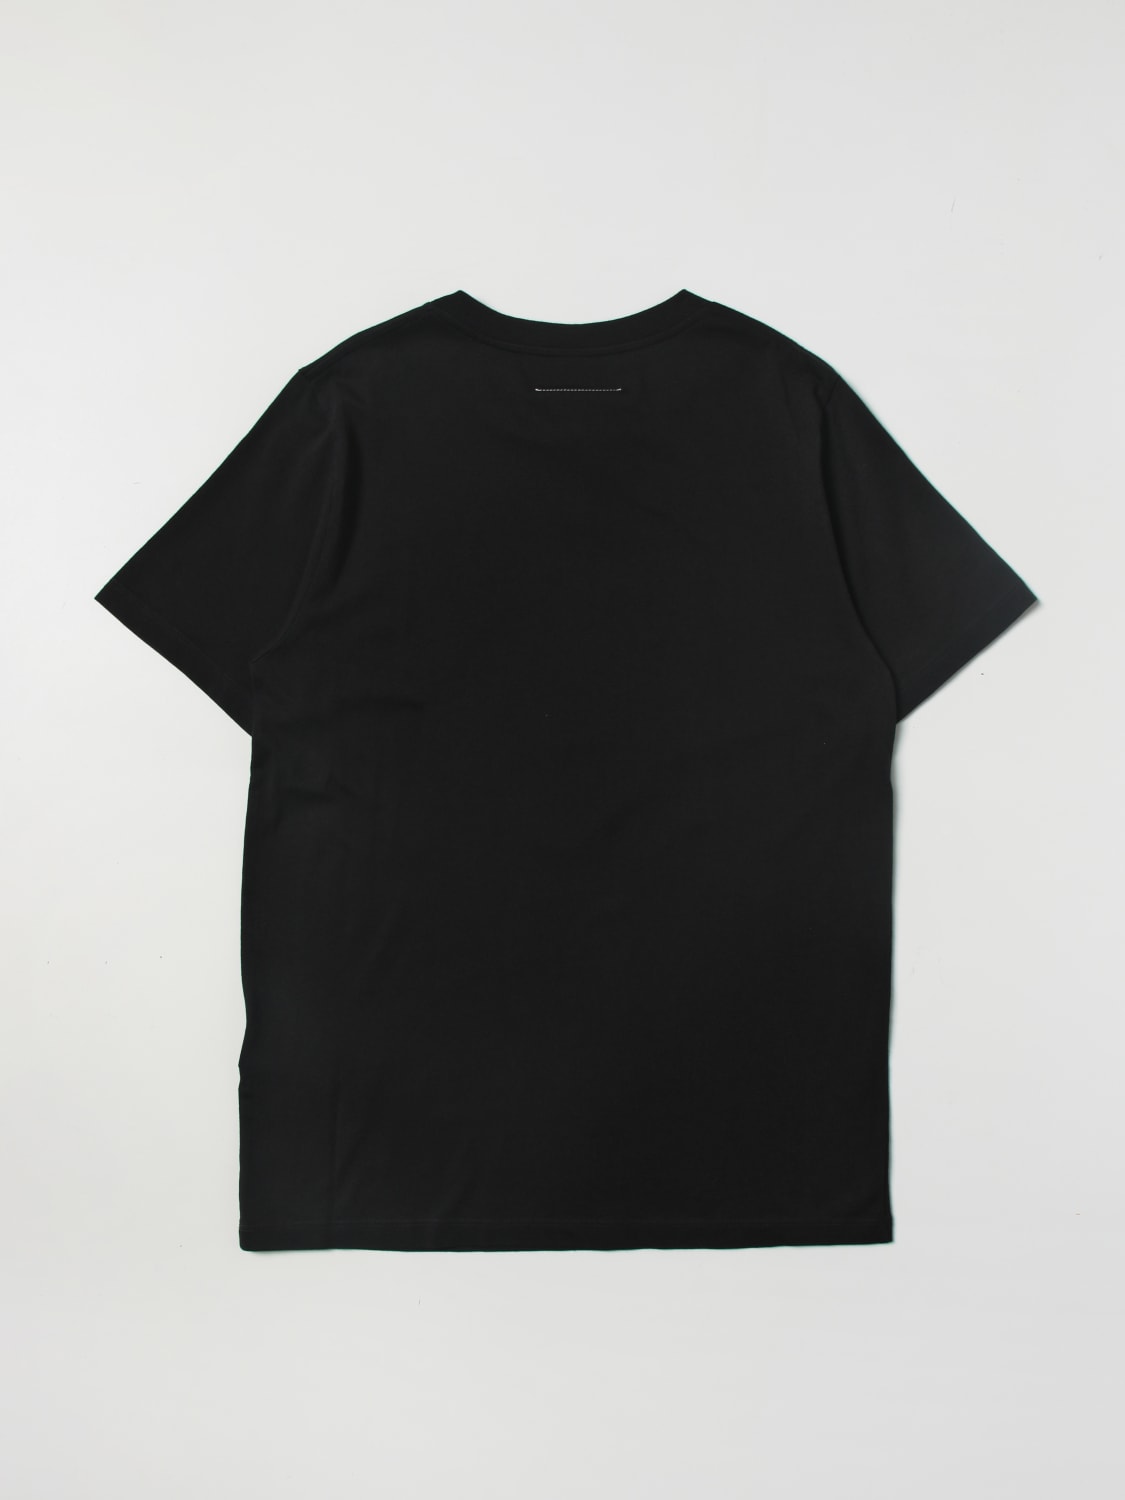 Mm6 Maison Margiela Outlet: t-shirt for boys - Black | Mm6 Maison